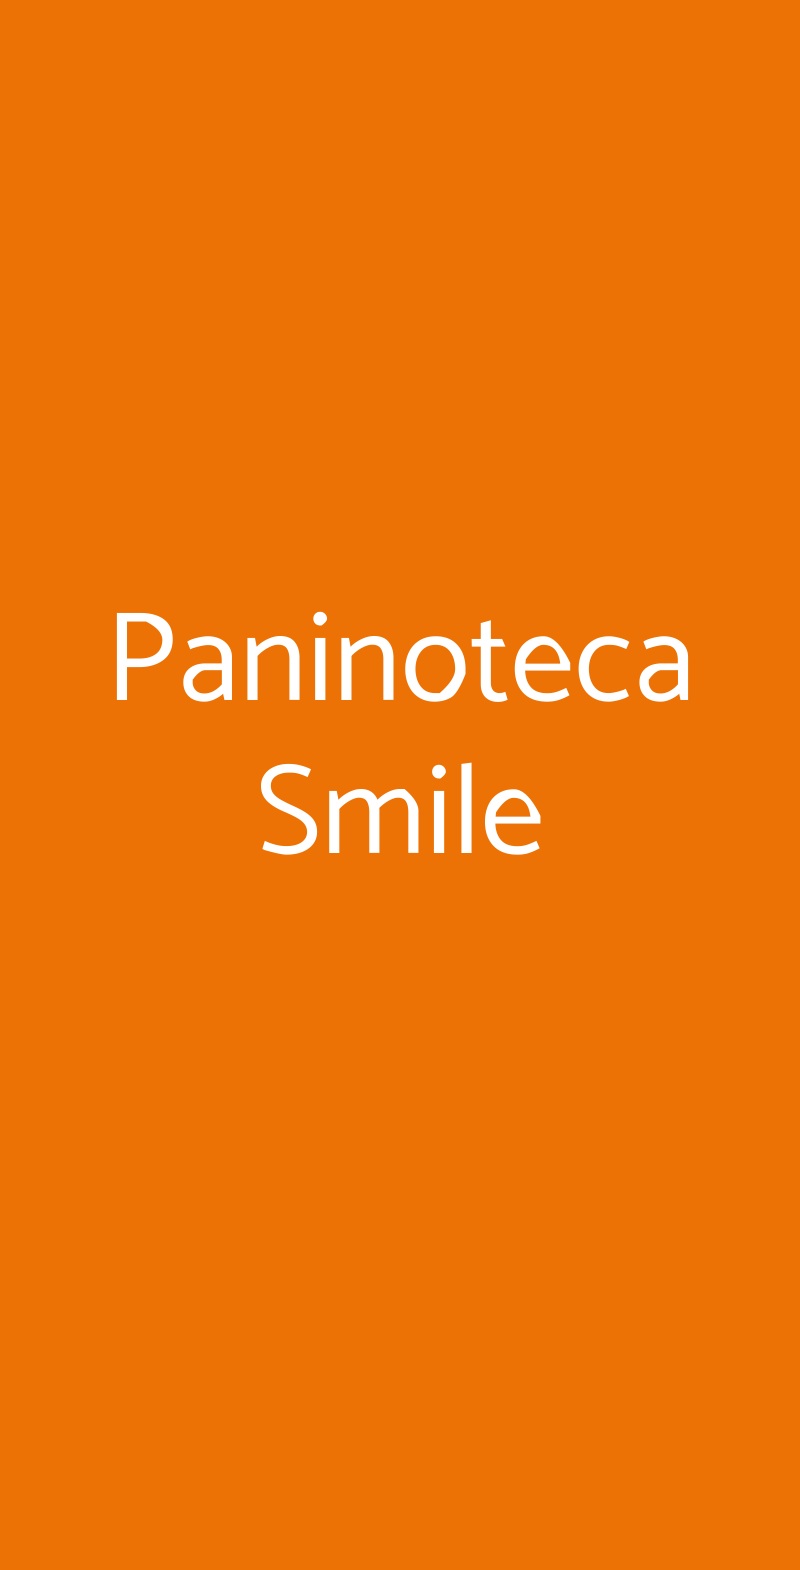 Paninoteca Smile Trieste menù 1 pagina